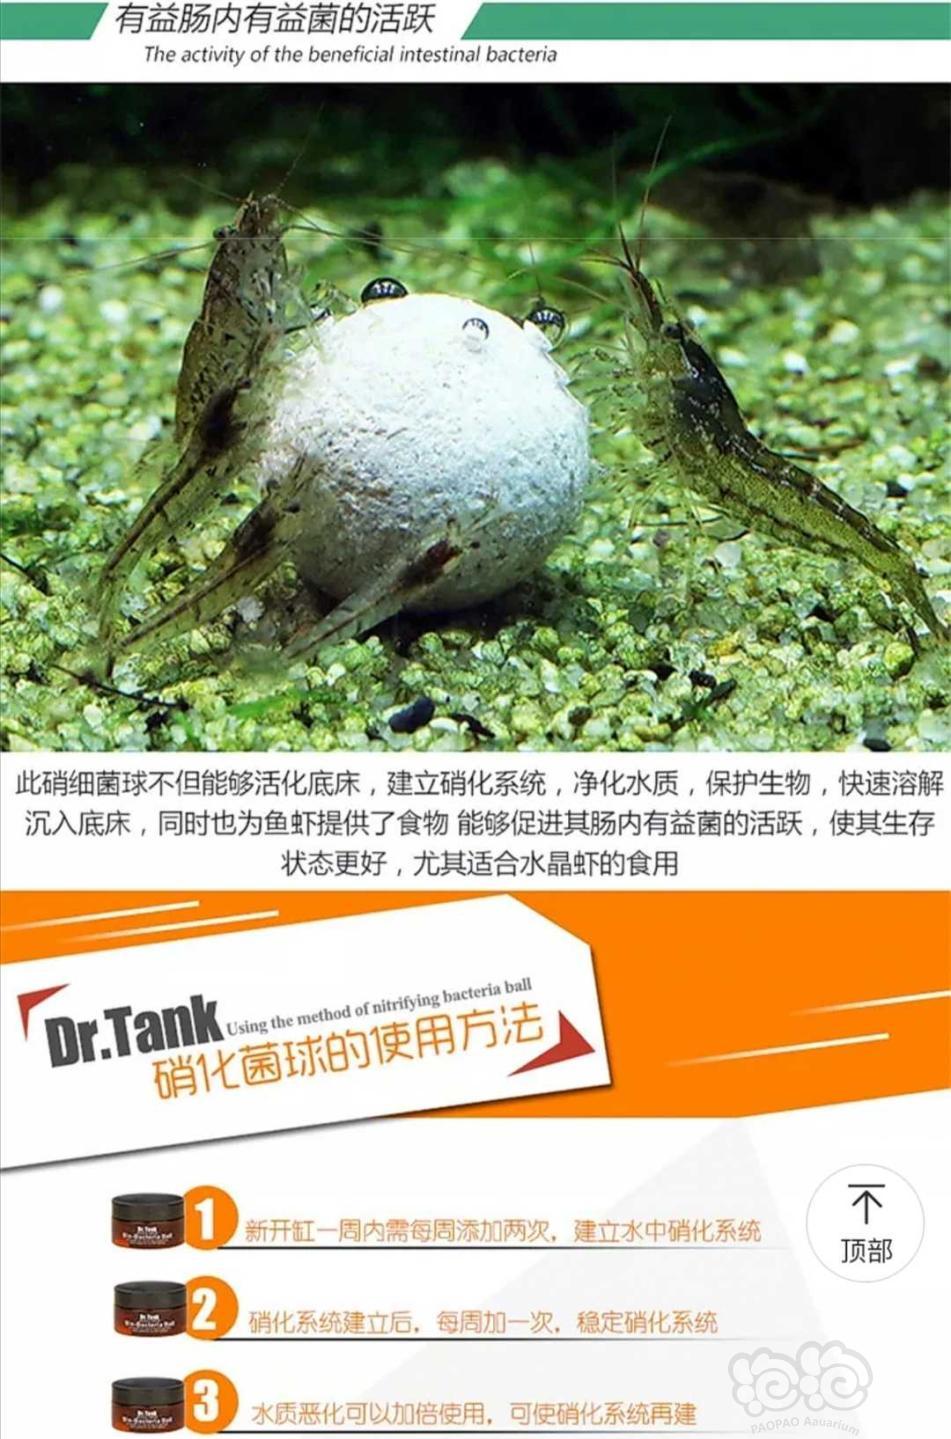 【用品】2019-11-20#RMB拍卖坦克二代硝化细菌球三粒装*3盒-图1